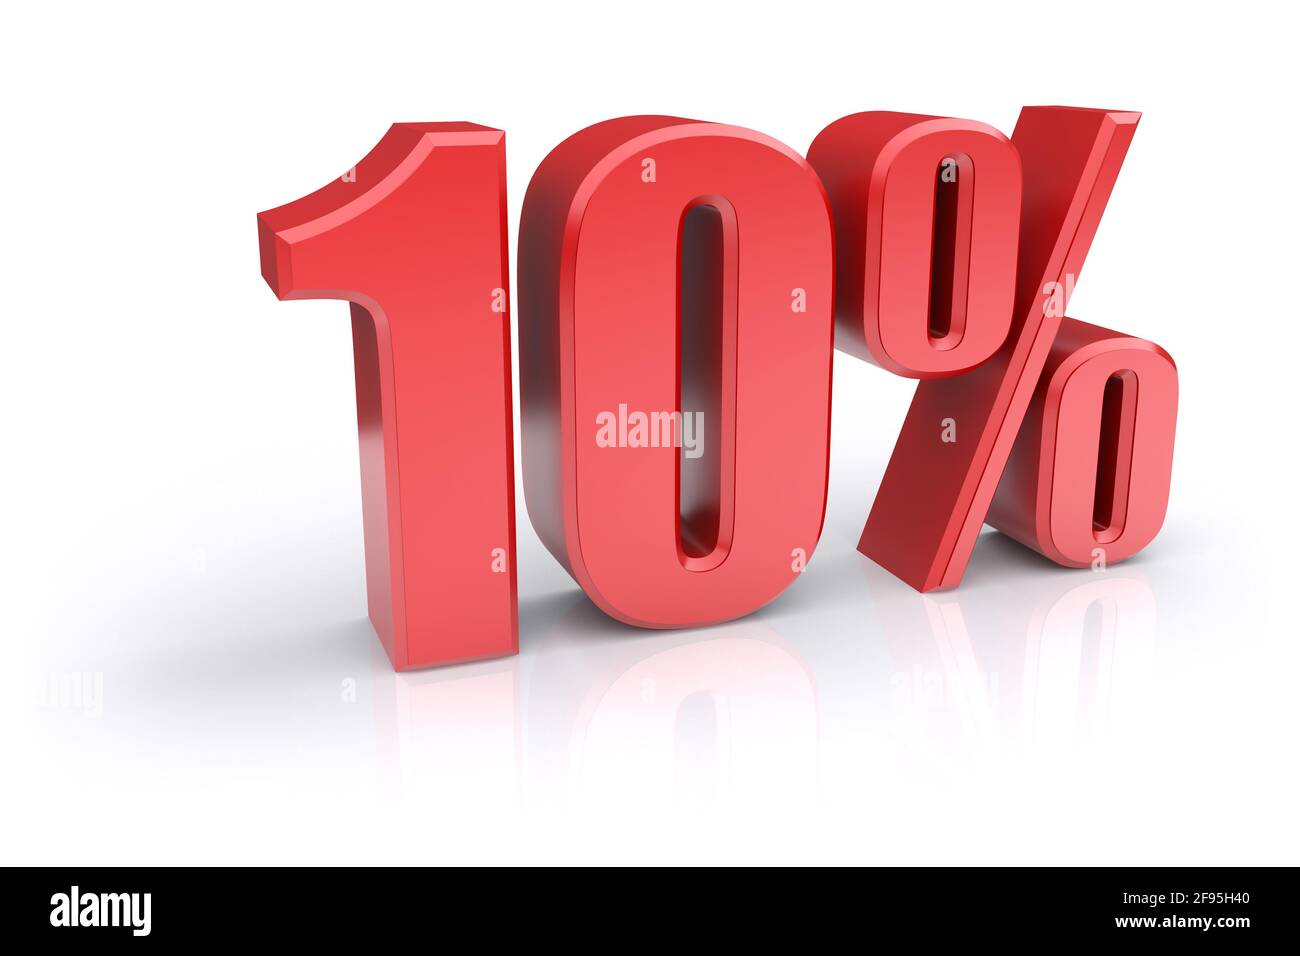 Icona rossa del tasso percentuale del 10% su sfondo bianco. immagine 3d rappresentata Foto Stock